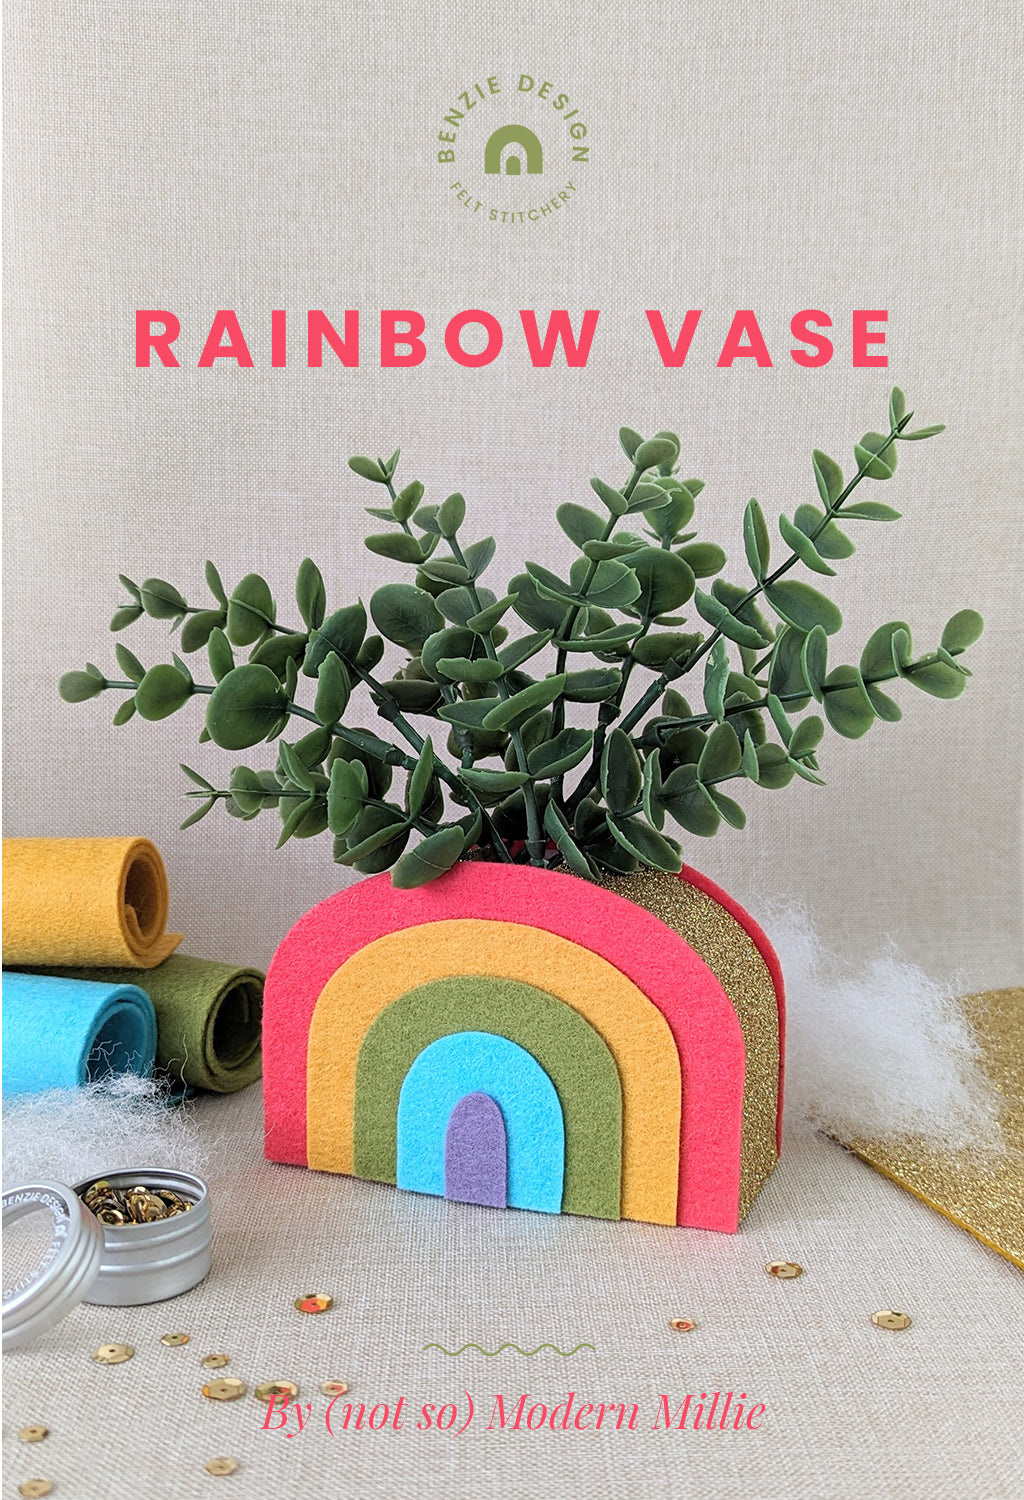 Felt Rainbow Vase tutorial